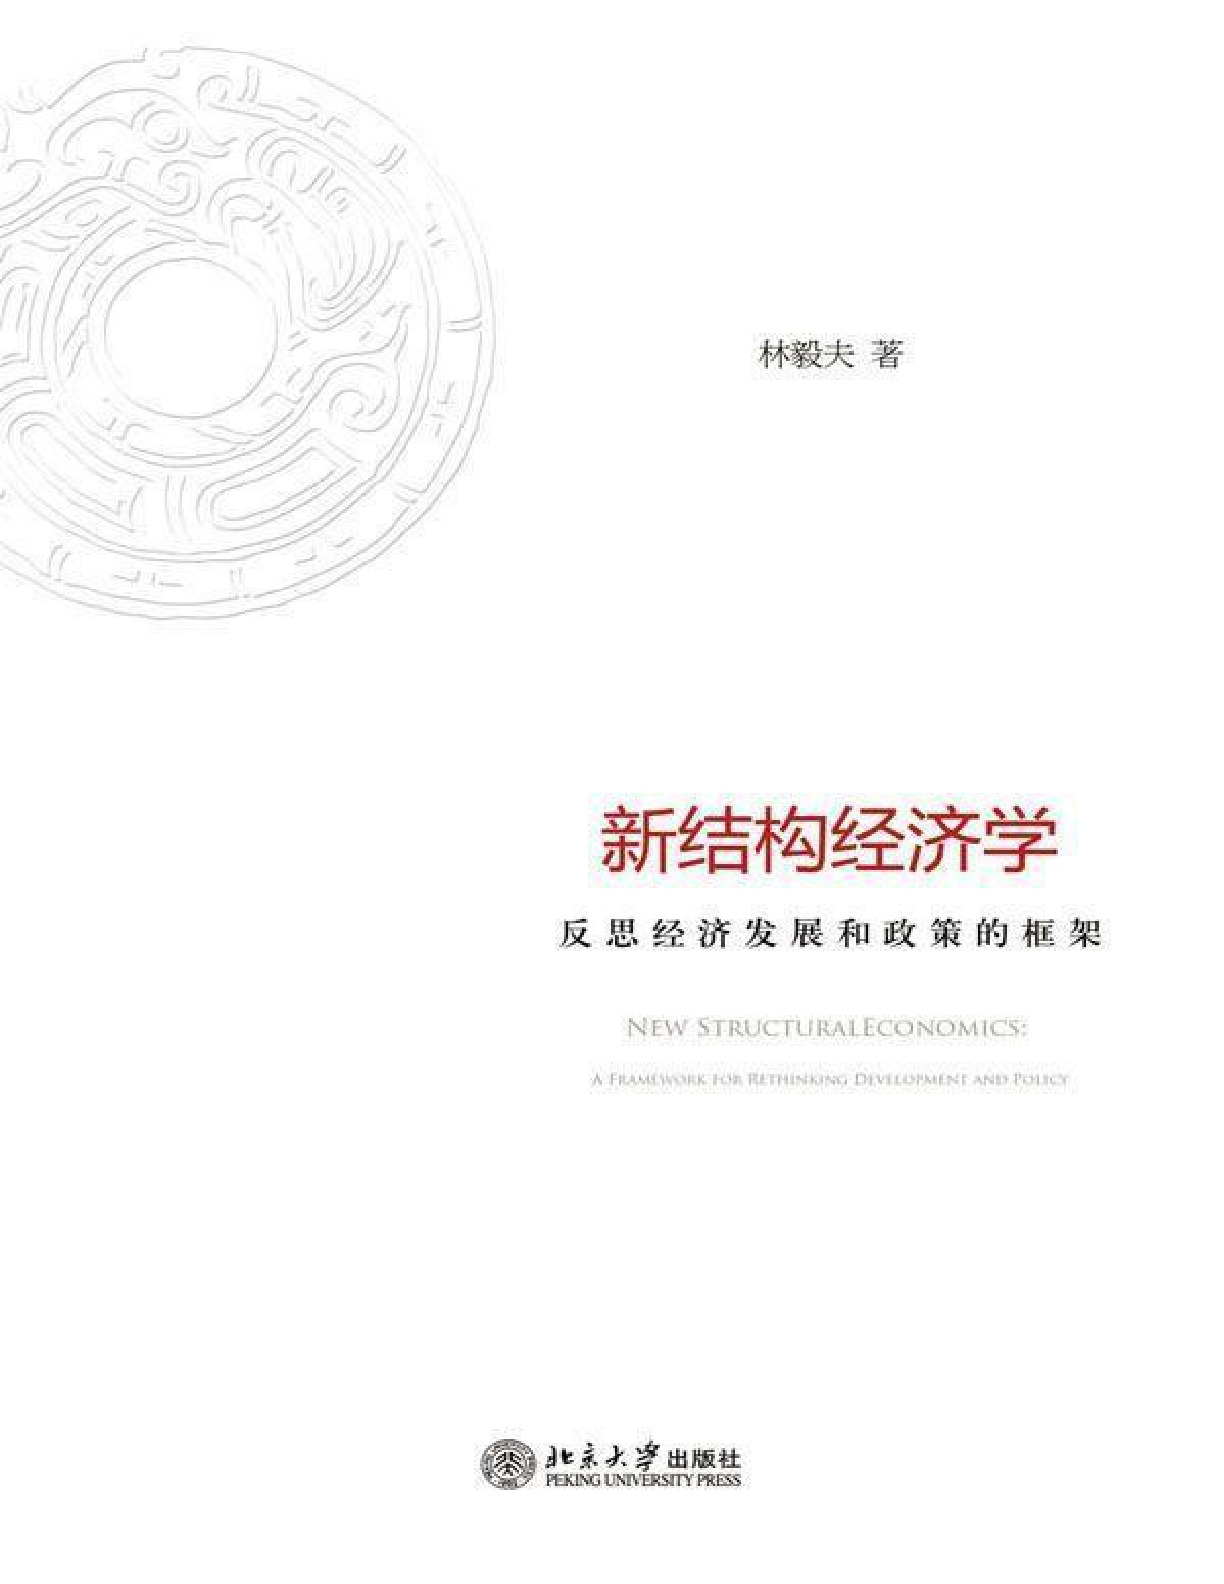 新结构经济学：反思经济发展与政策的理论框架 – 林毅夫